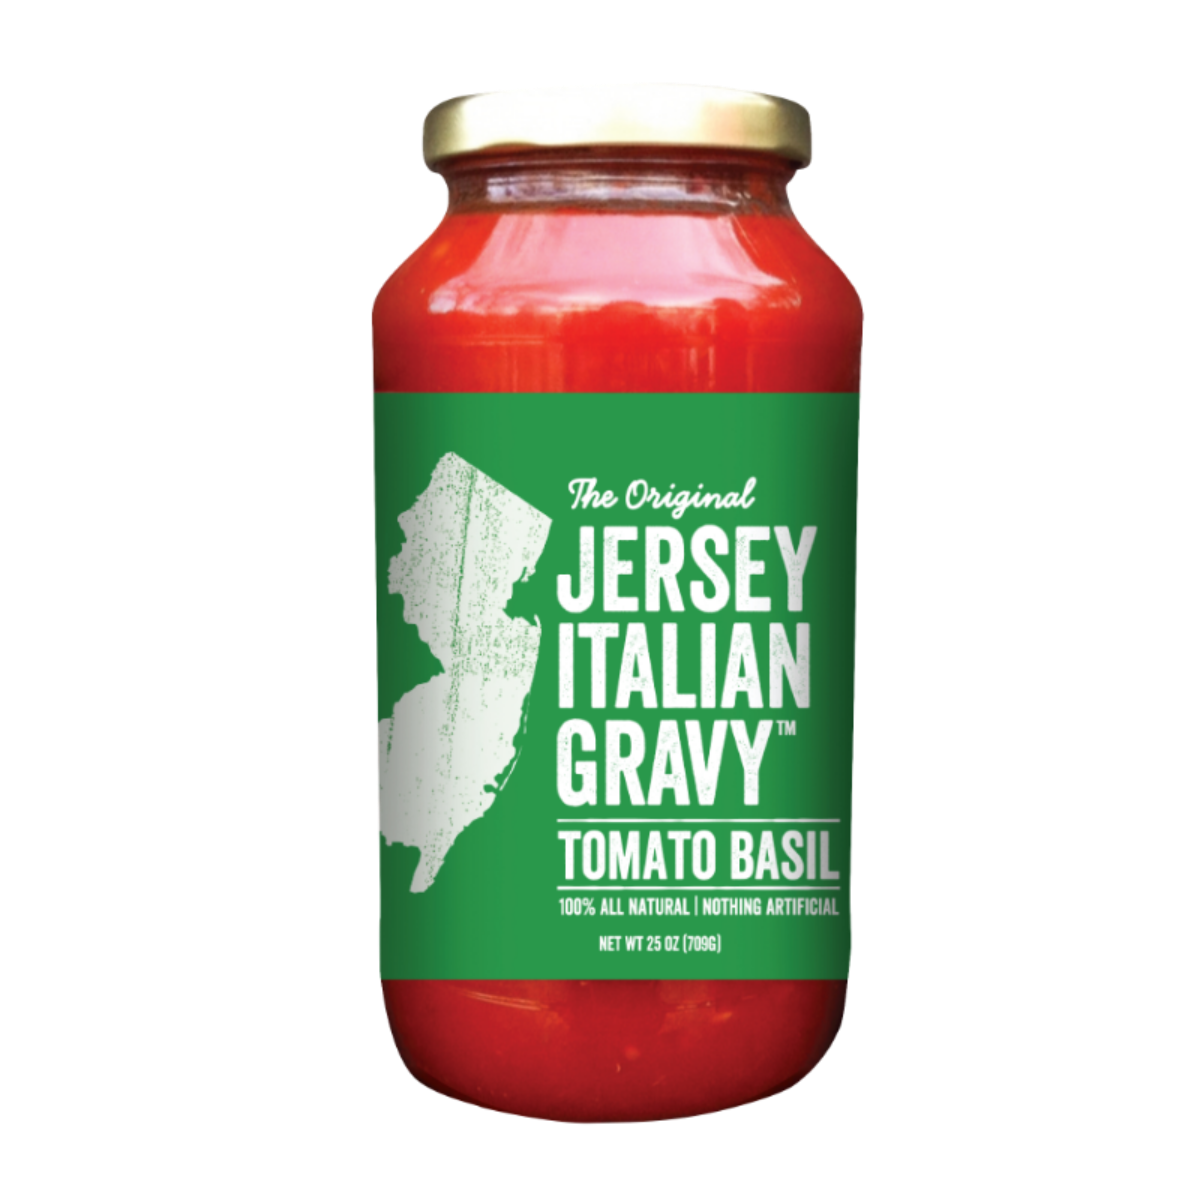 Jersey Italian Gravy Tomato Basil